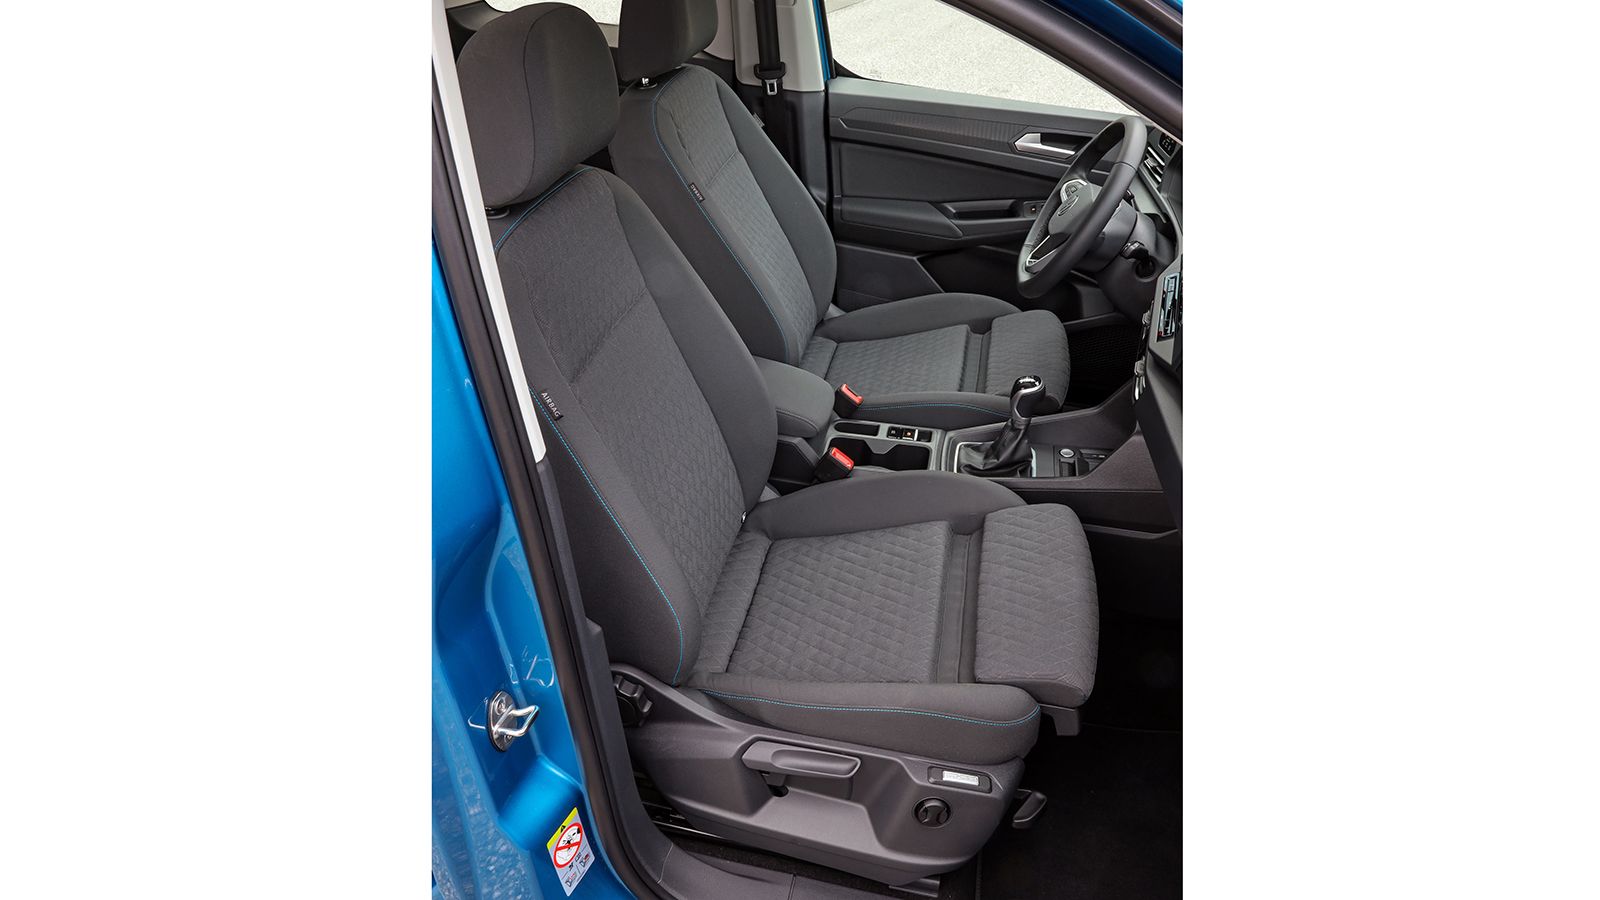 Προαιρετικά σε όλες τις εκδόσεις (επιβατικές και επαγγελματικές) του VW Caddy 5ης γενιάς, μπορούν να τοποθετηθούν τα προηγμένα καθίσματα «AGR ergoComfort».